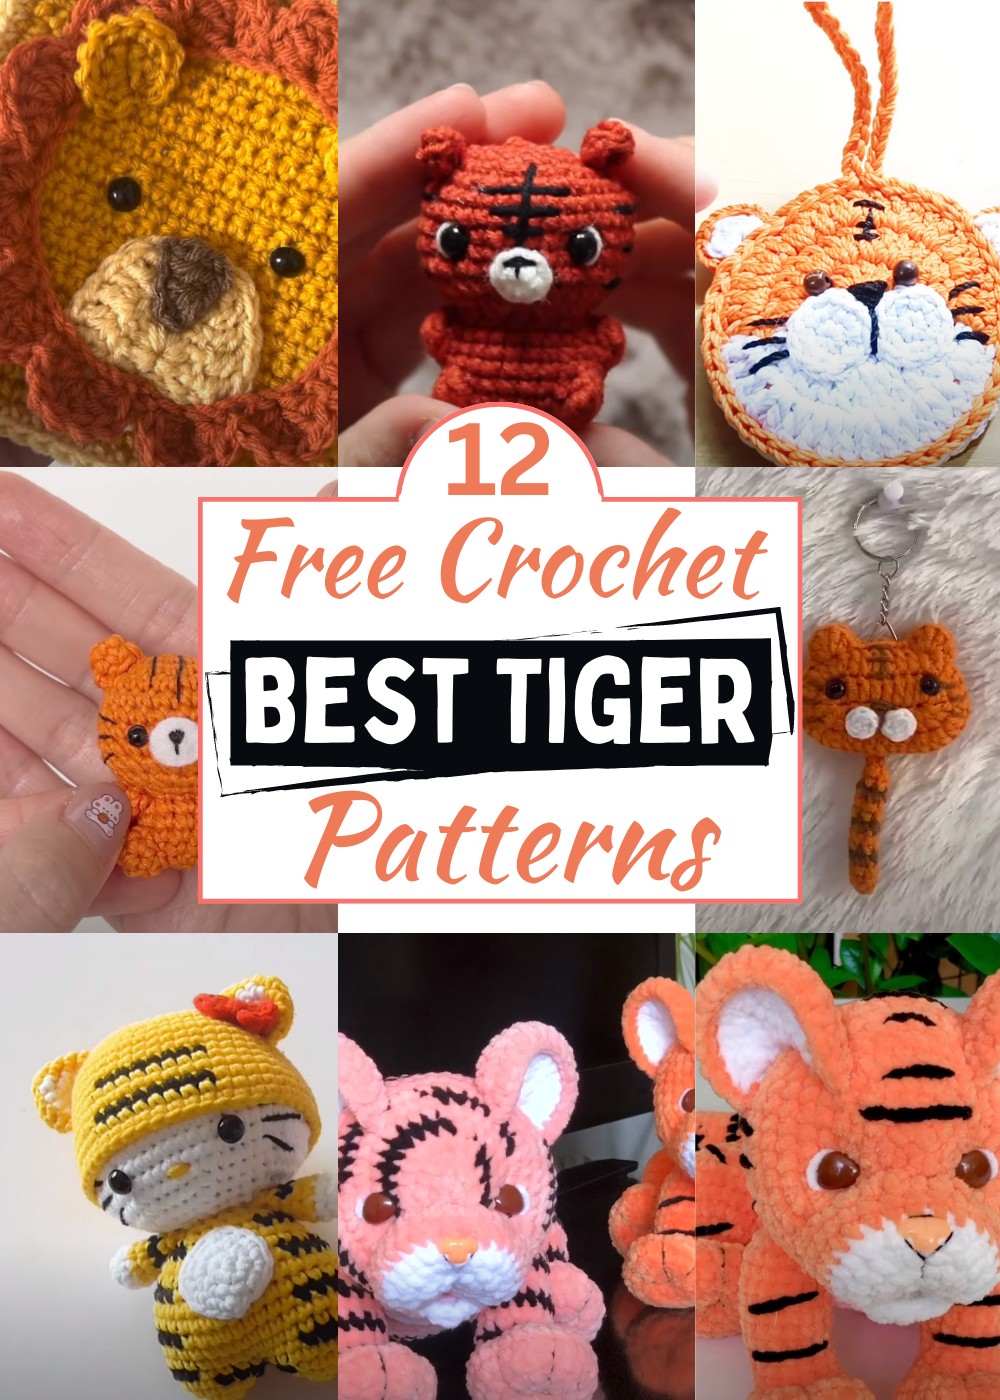 Crochet Tiger Patterns